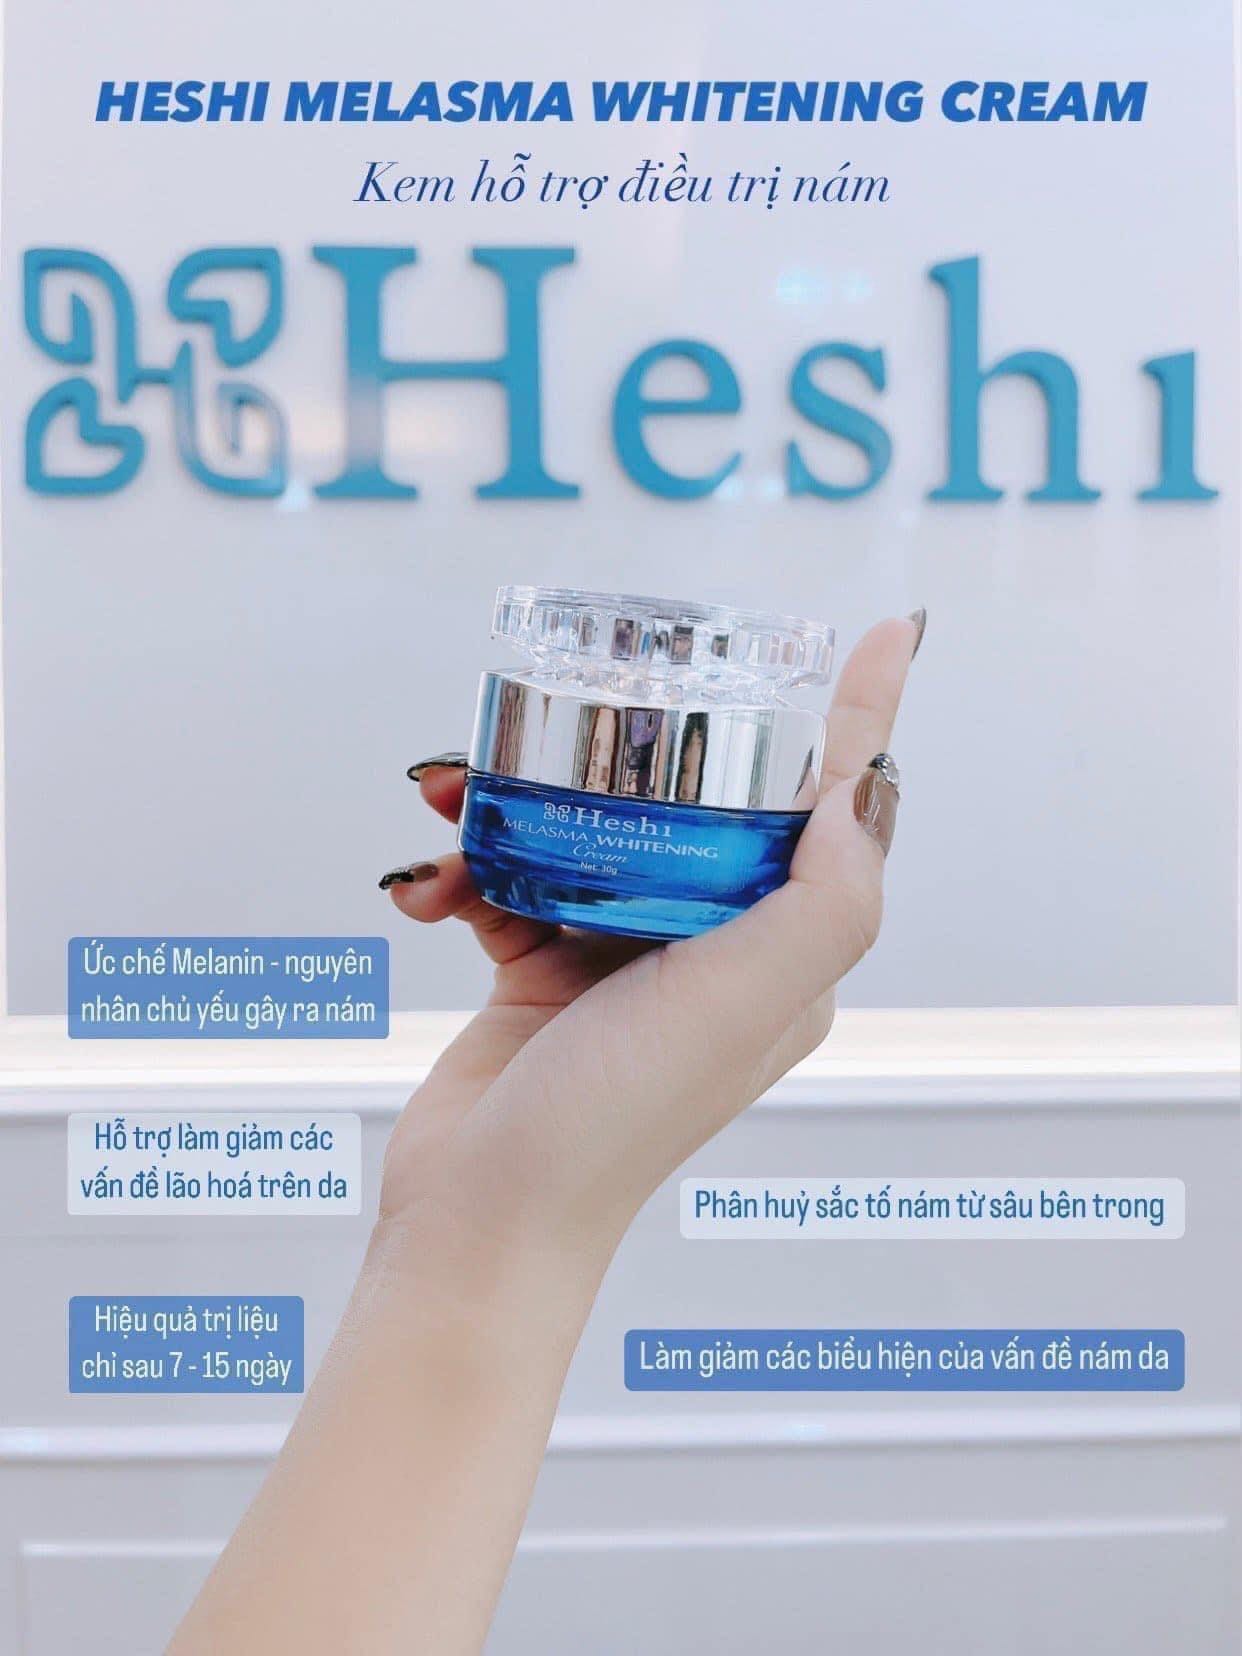  Kem đặc trị nám Heshi áp dụng công nghệ hiện đại bậc nhất ngành làm đẹp vừa trị nám, tàn nhang hiệu quả vừa ngăn ngừa chúng quay trở lại đúng là một công đôi việc!